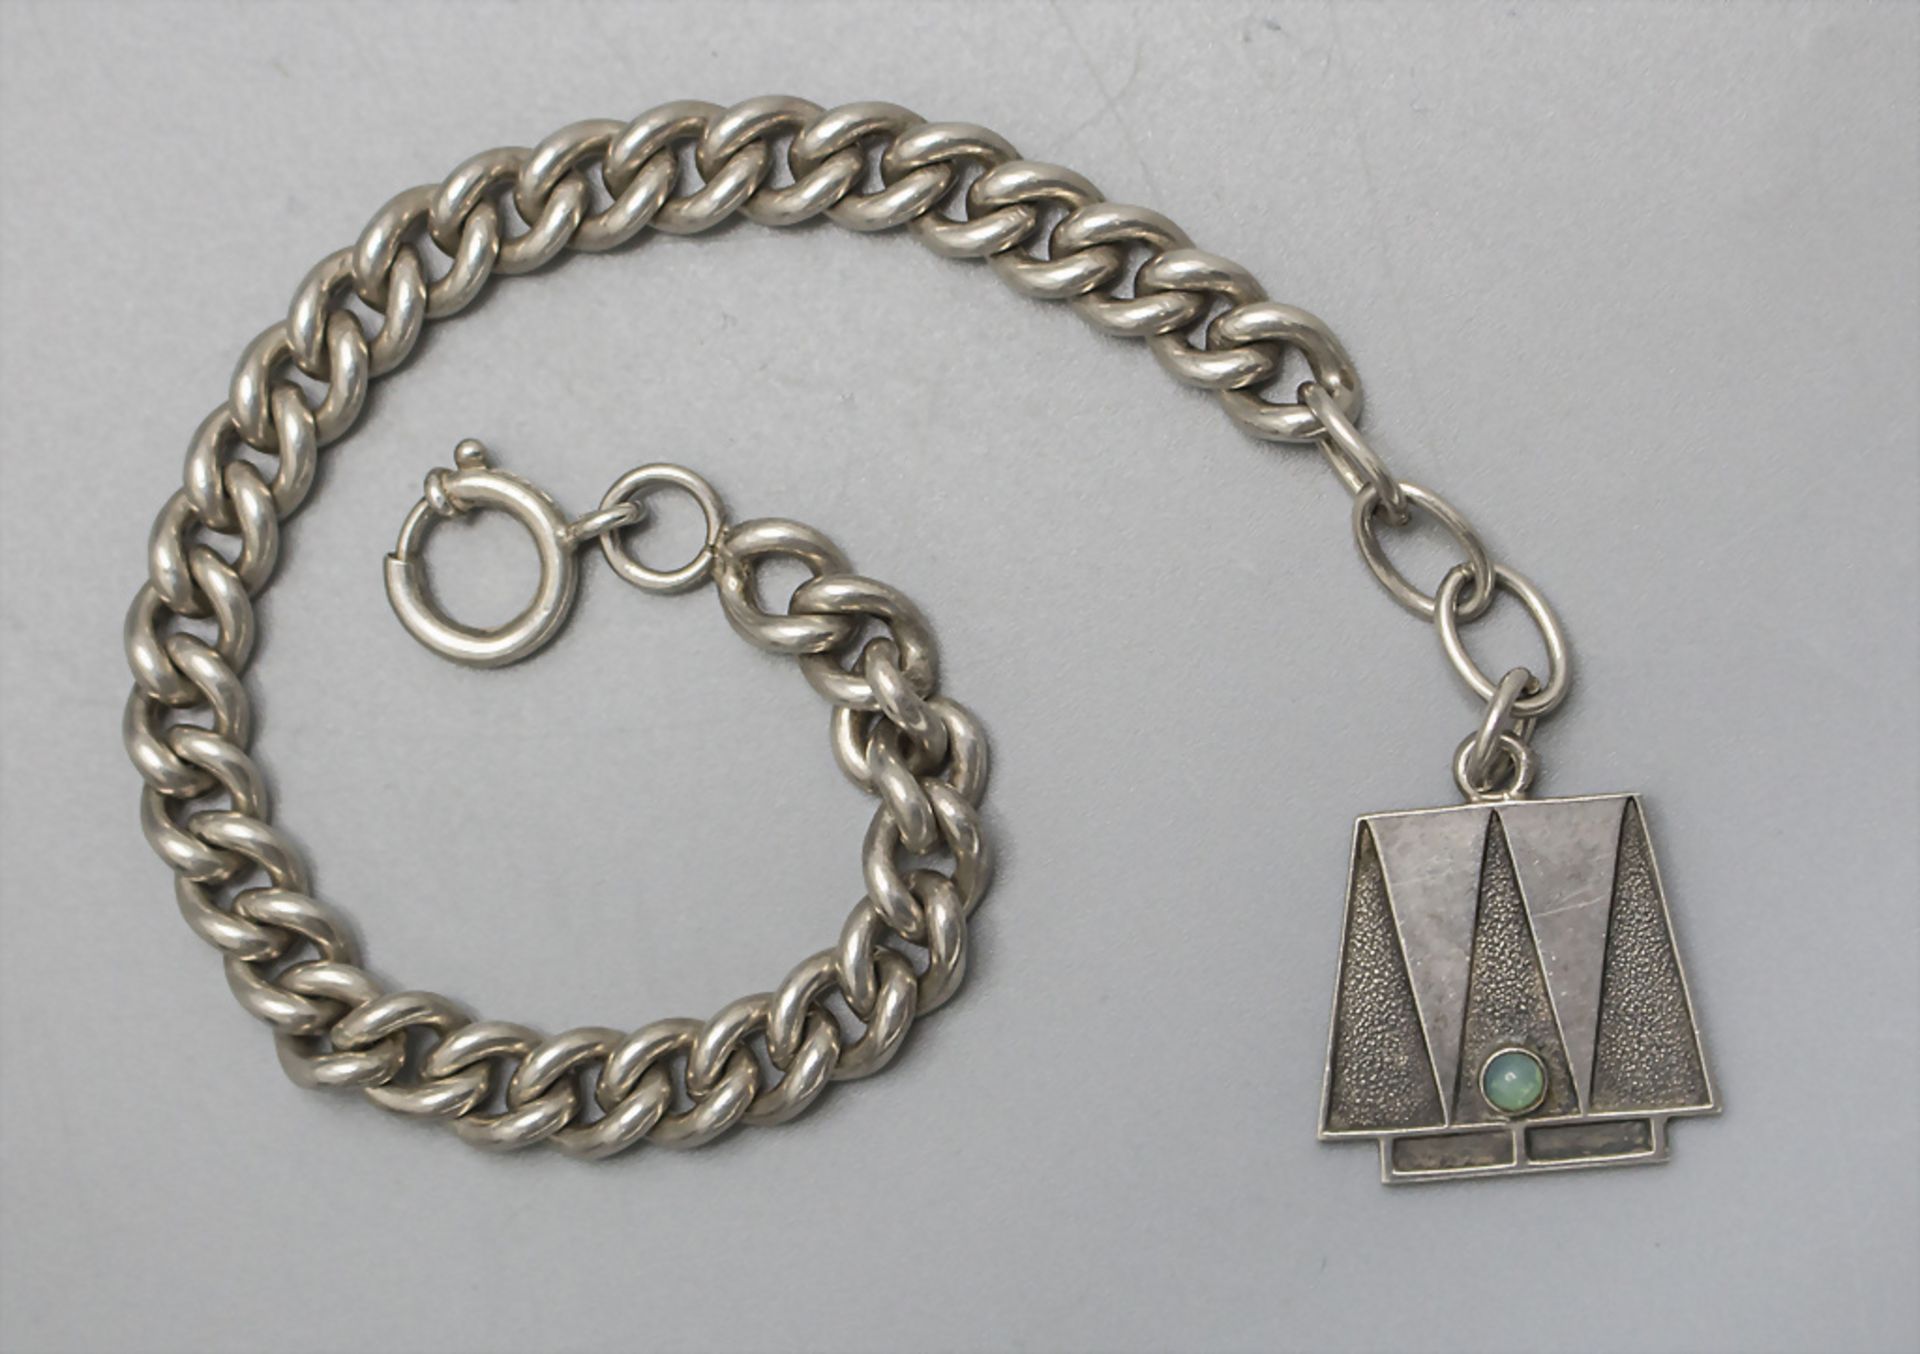 Jugendstil Anhänger mit Armband / An Art Nouveau pendant with bracelet, wohl Pforzheim, um 1900